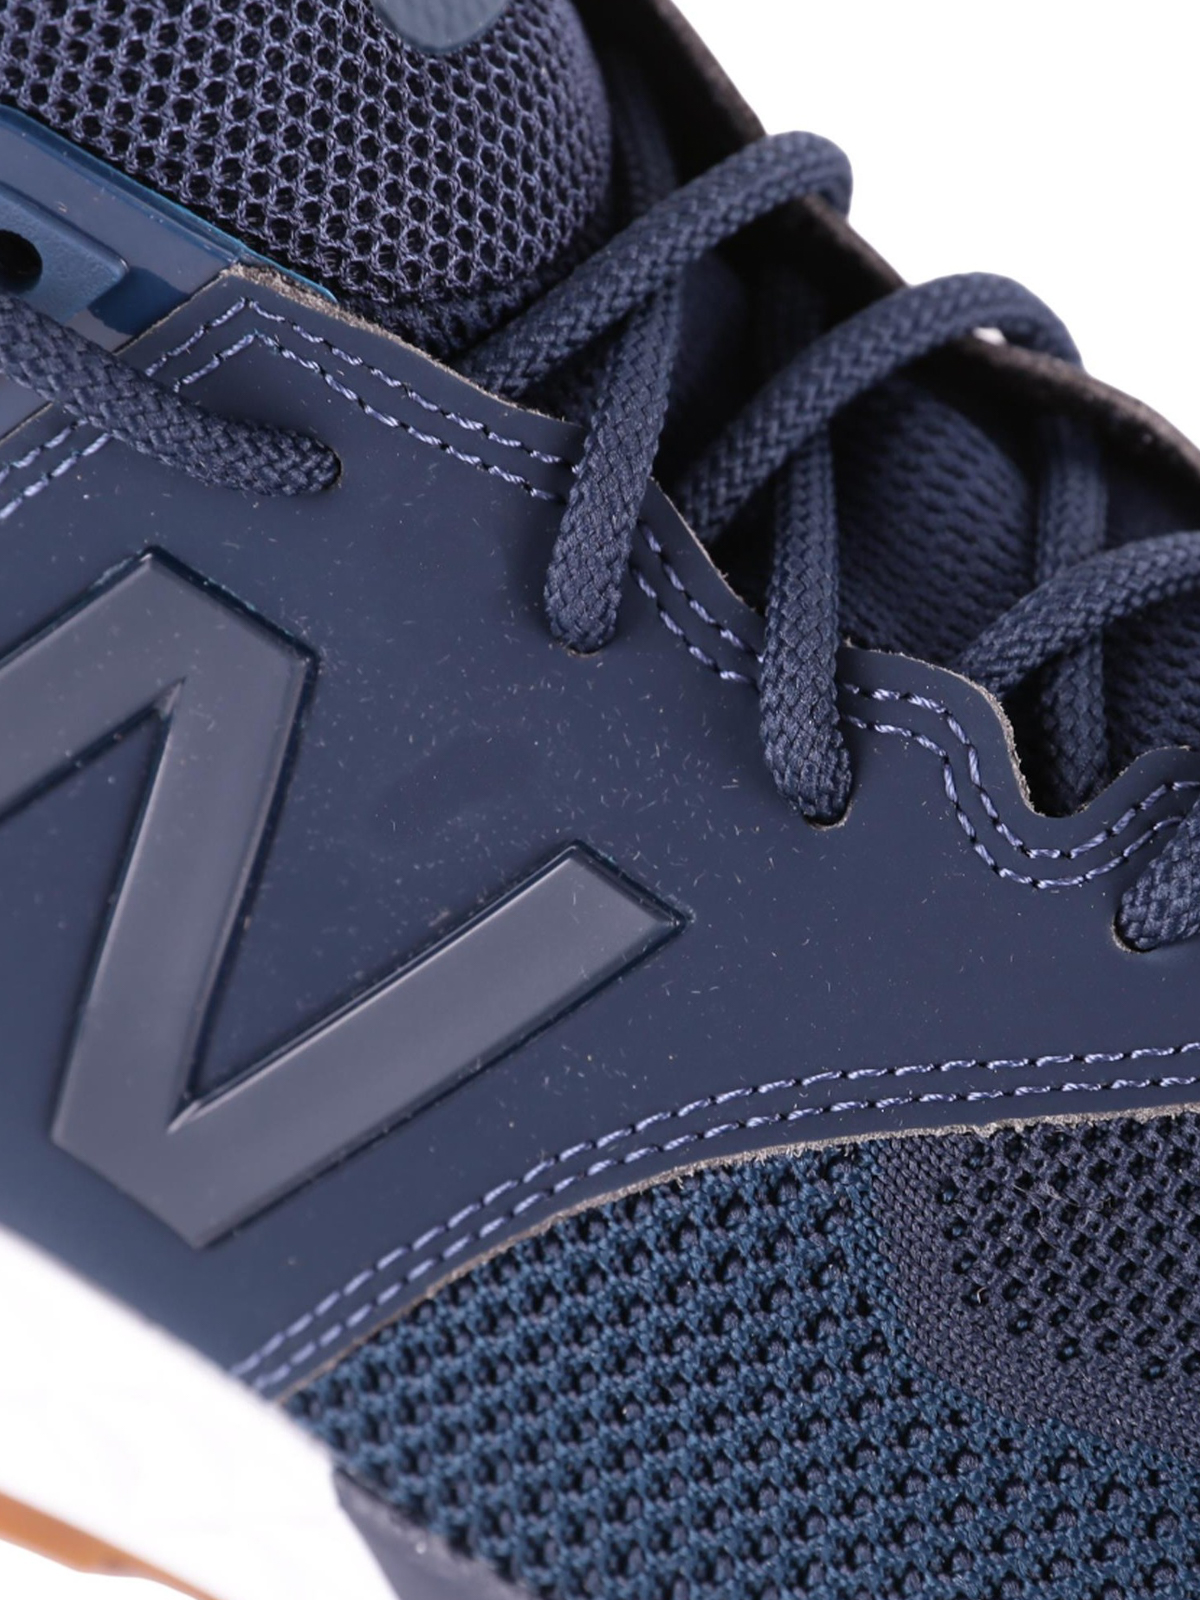 Trainers New Balance - 574 Sport blue sneakers - MS574EMB | iKRIX.com